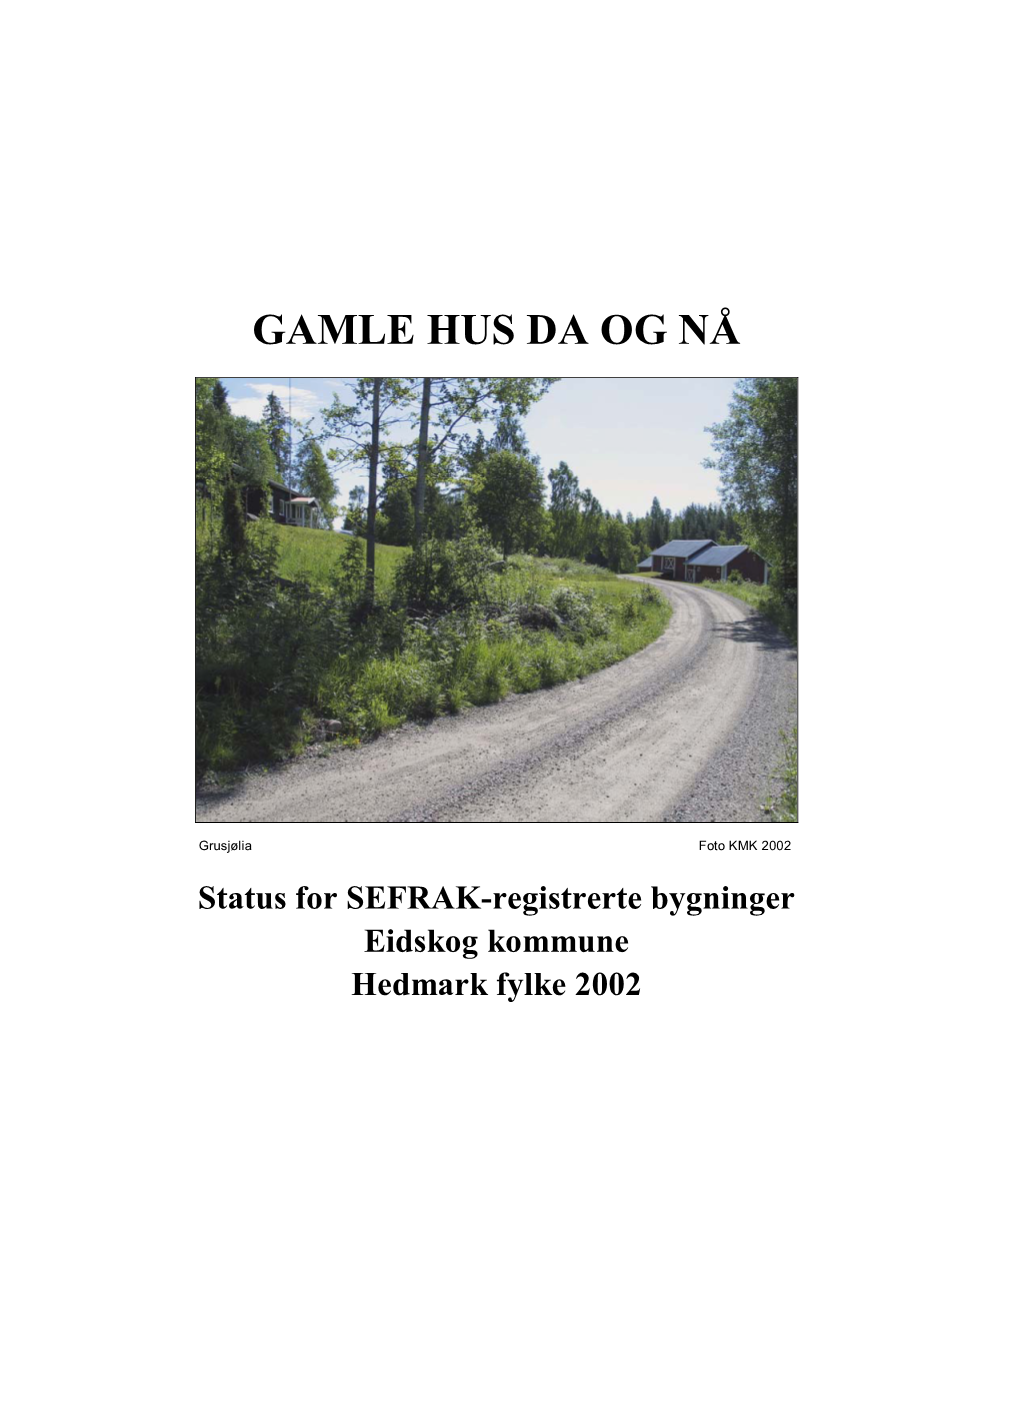 Gamle Hus Eidskog 2002.Pdf (5.217Mb)